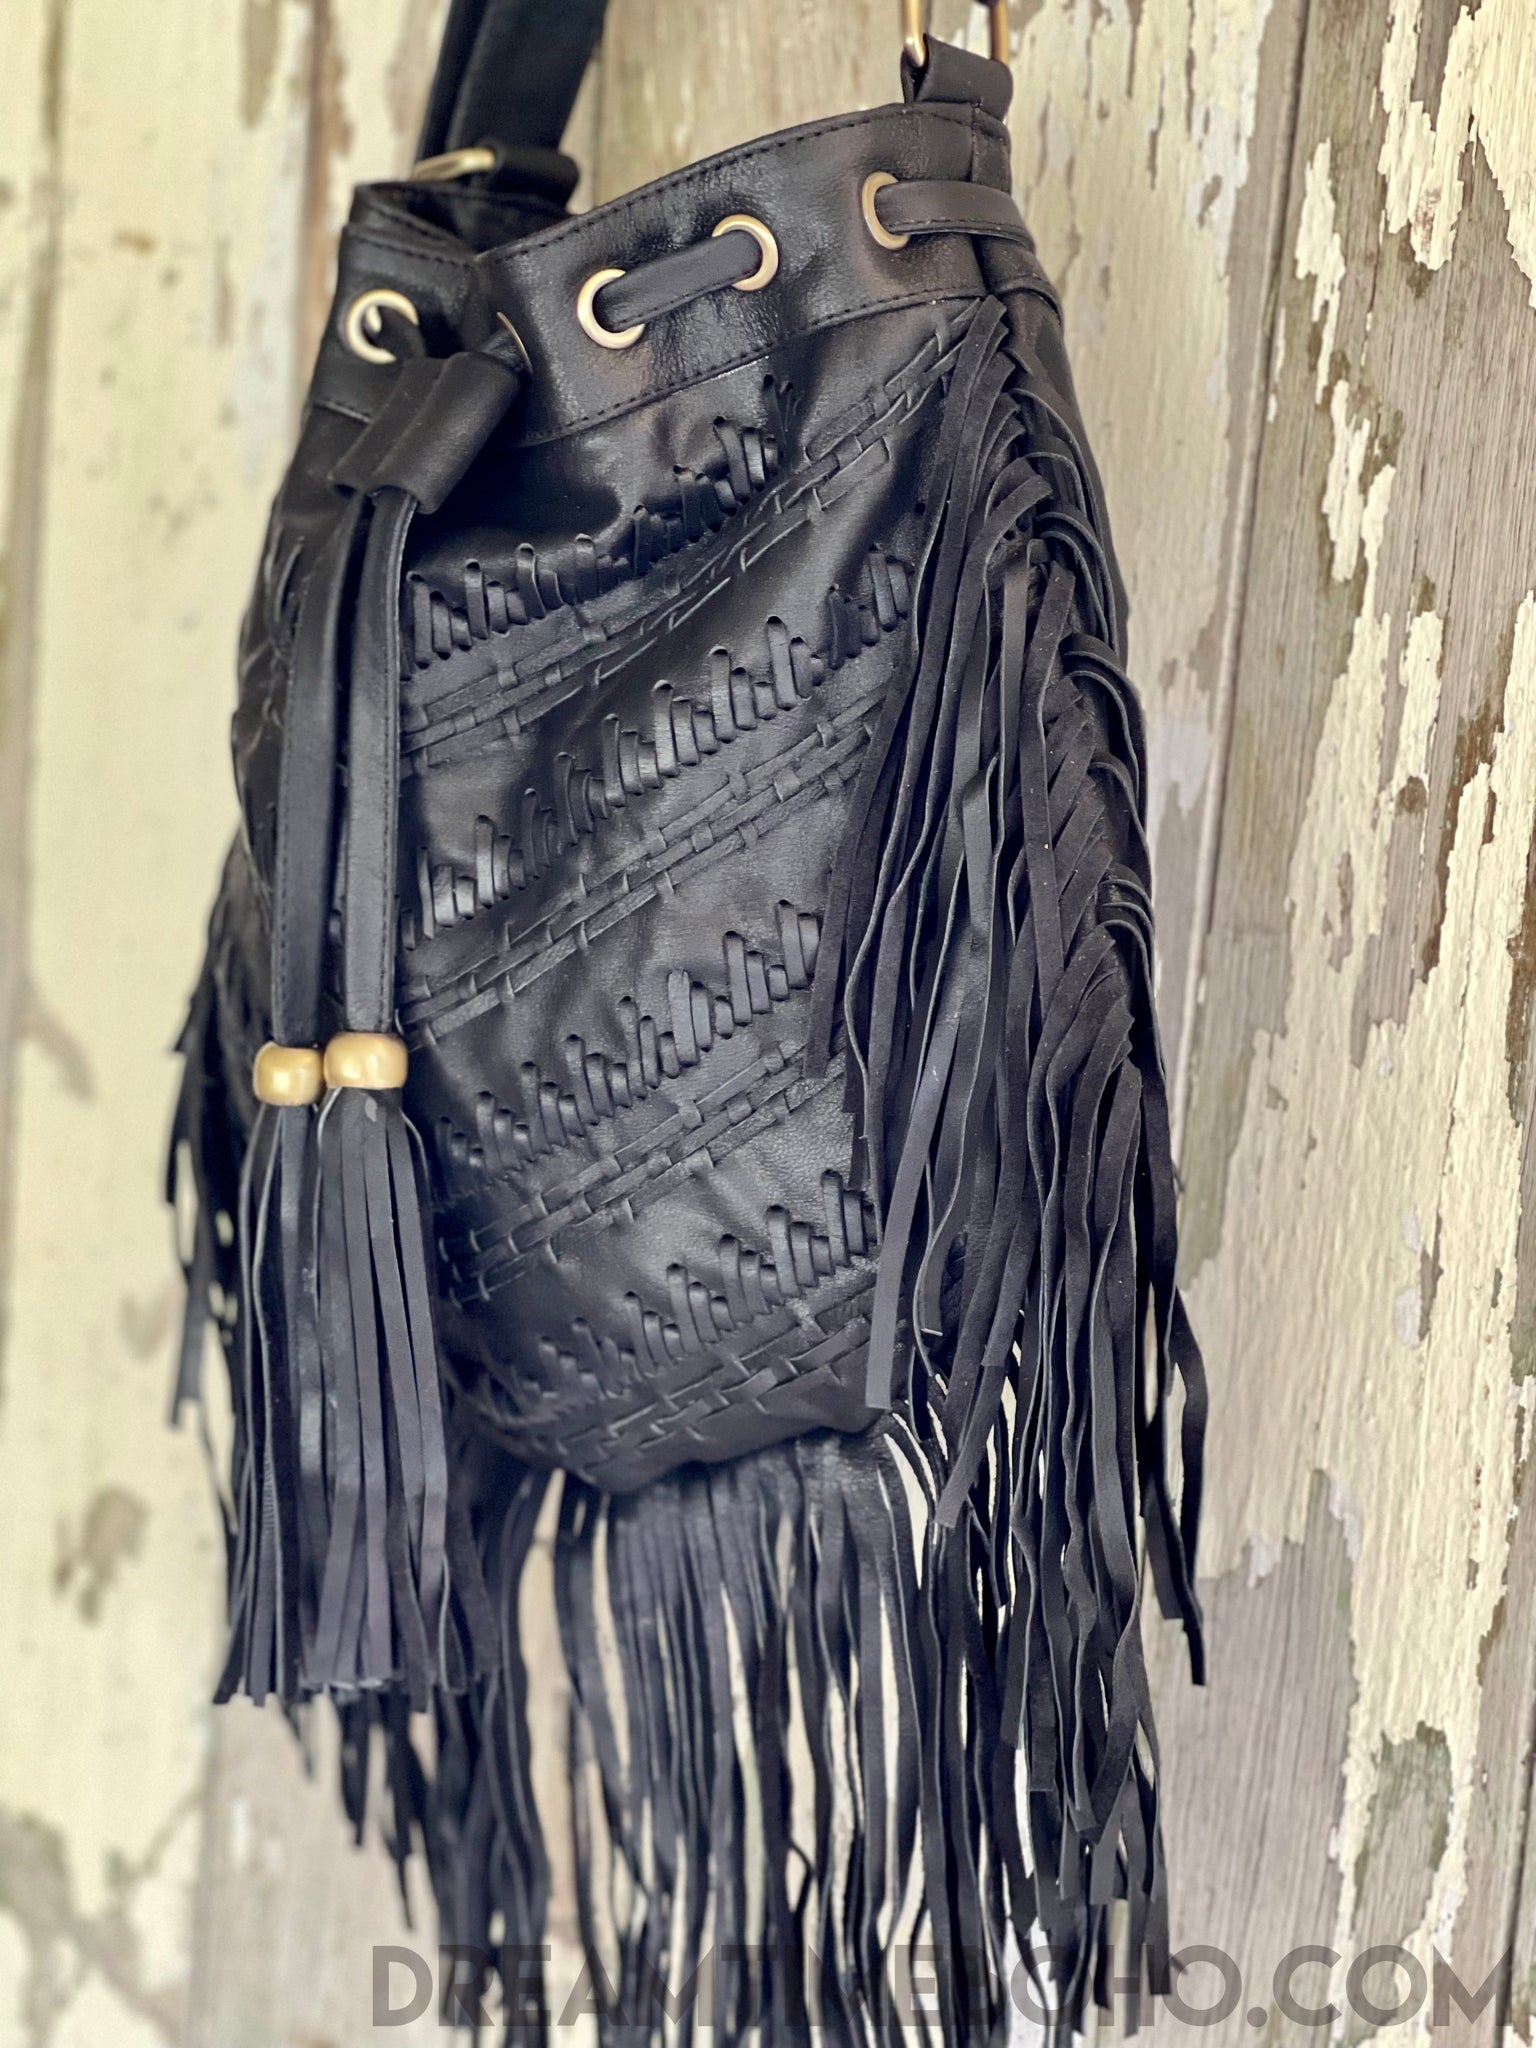 Fringe Gypsy Handbag - Black Fringed Leather — Seadrift Soul